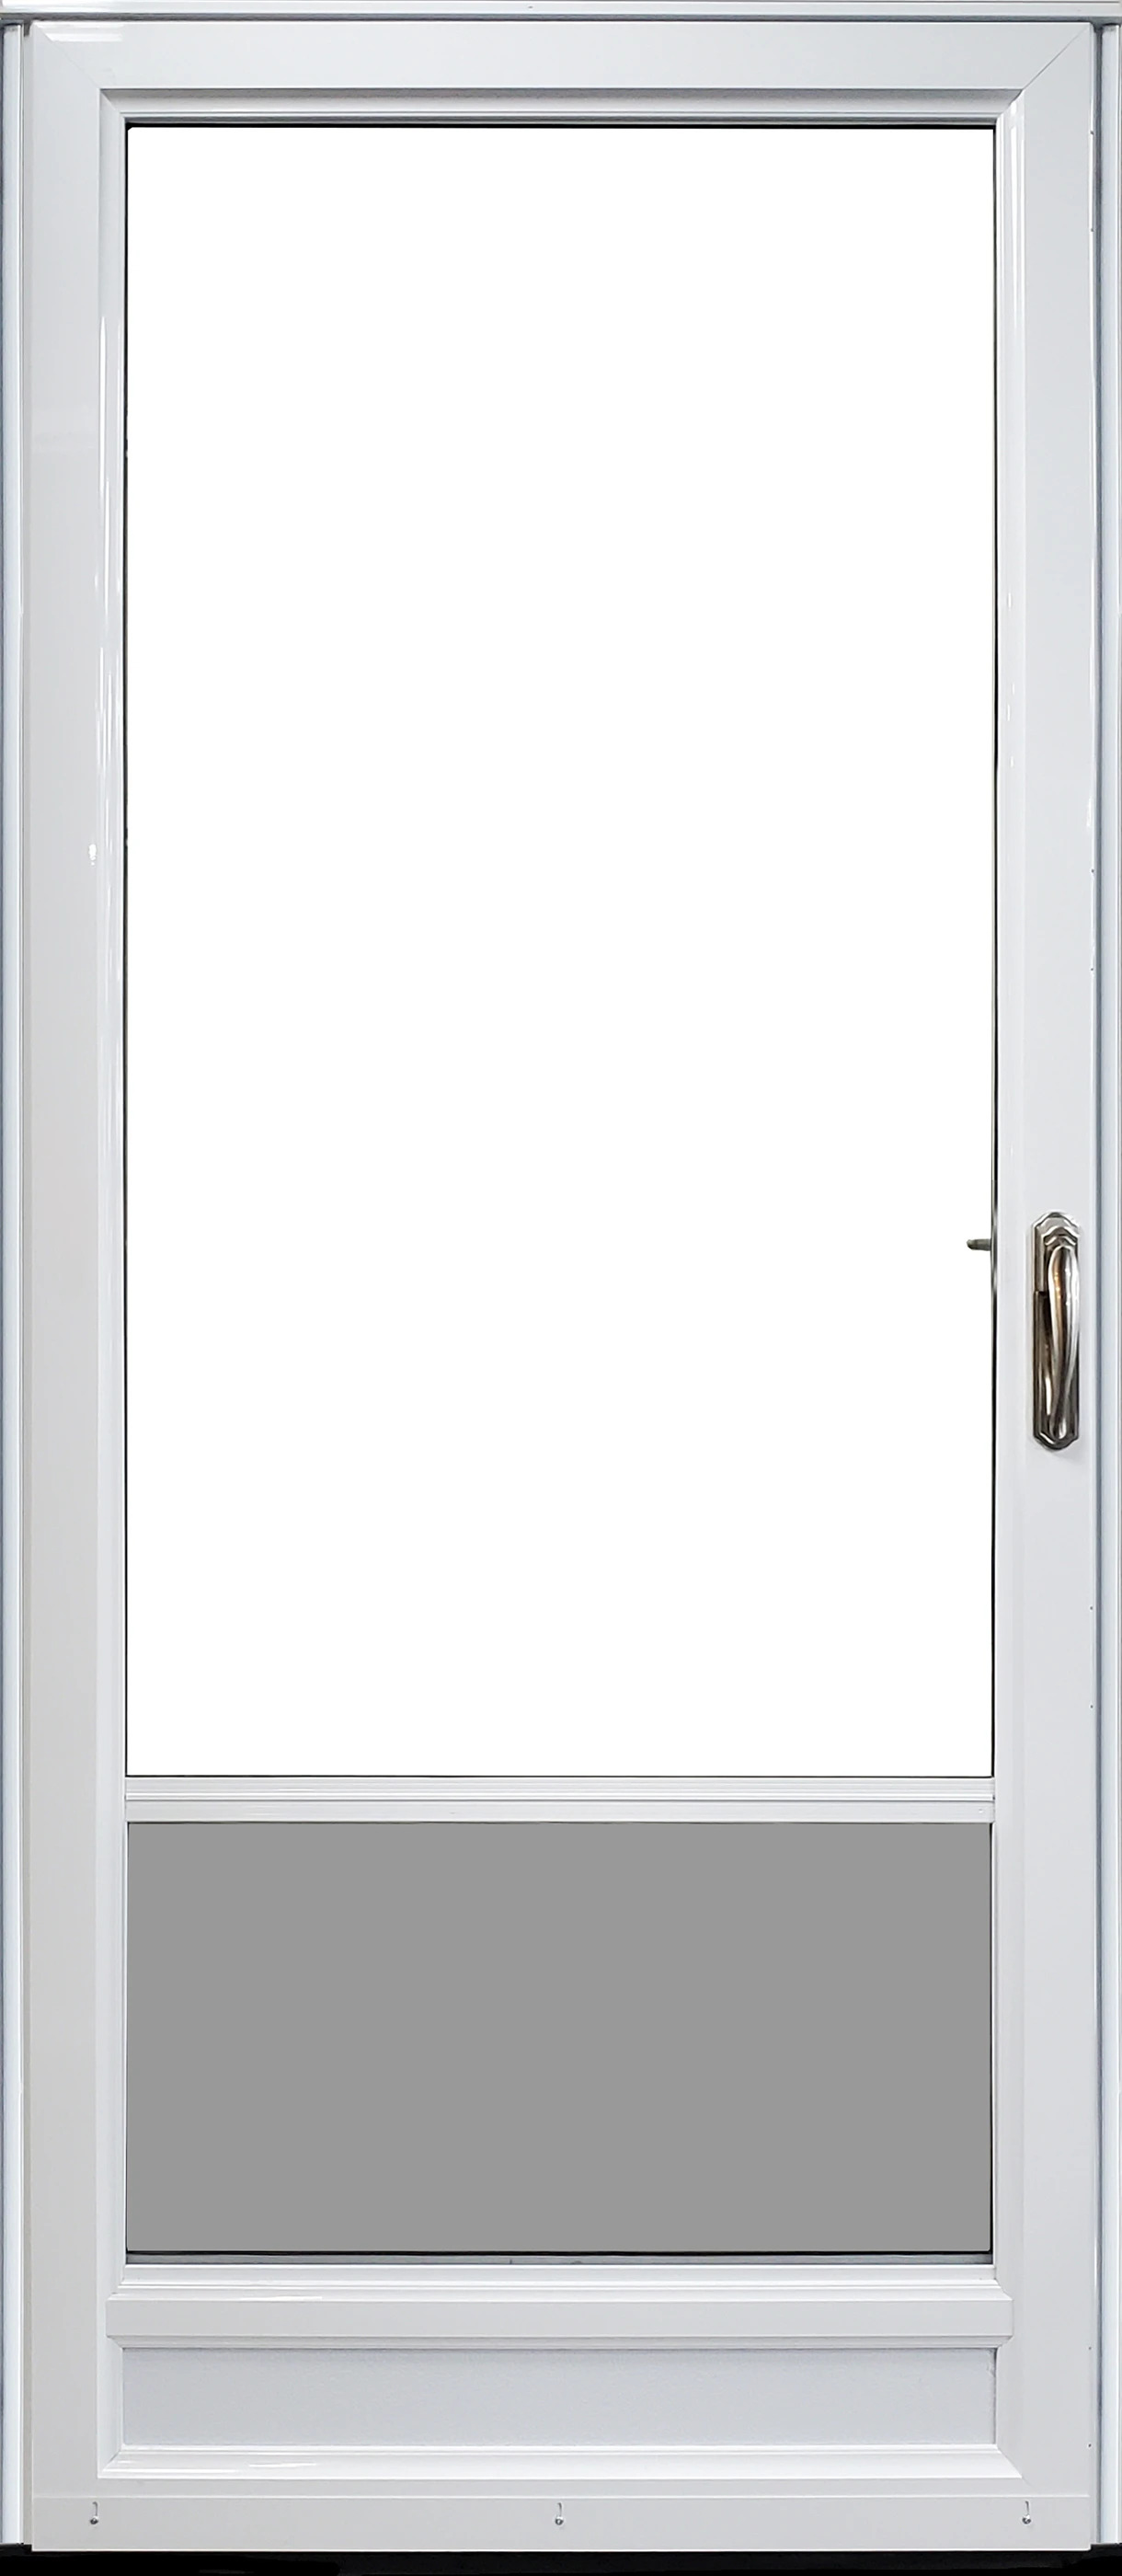 3/4 Self-Storing - Modern Aluminum Storm Door